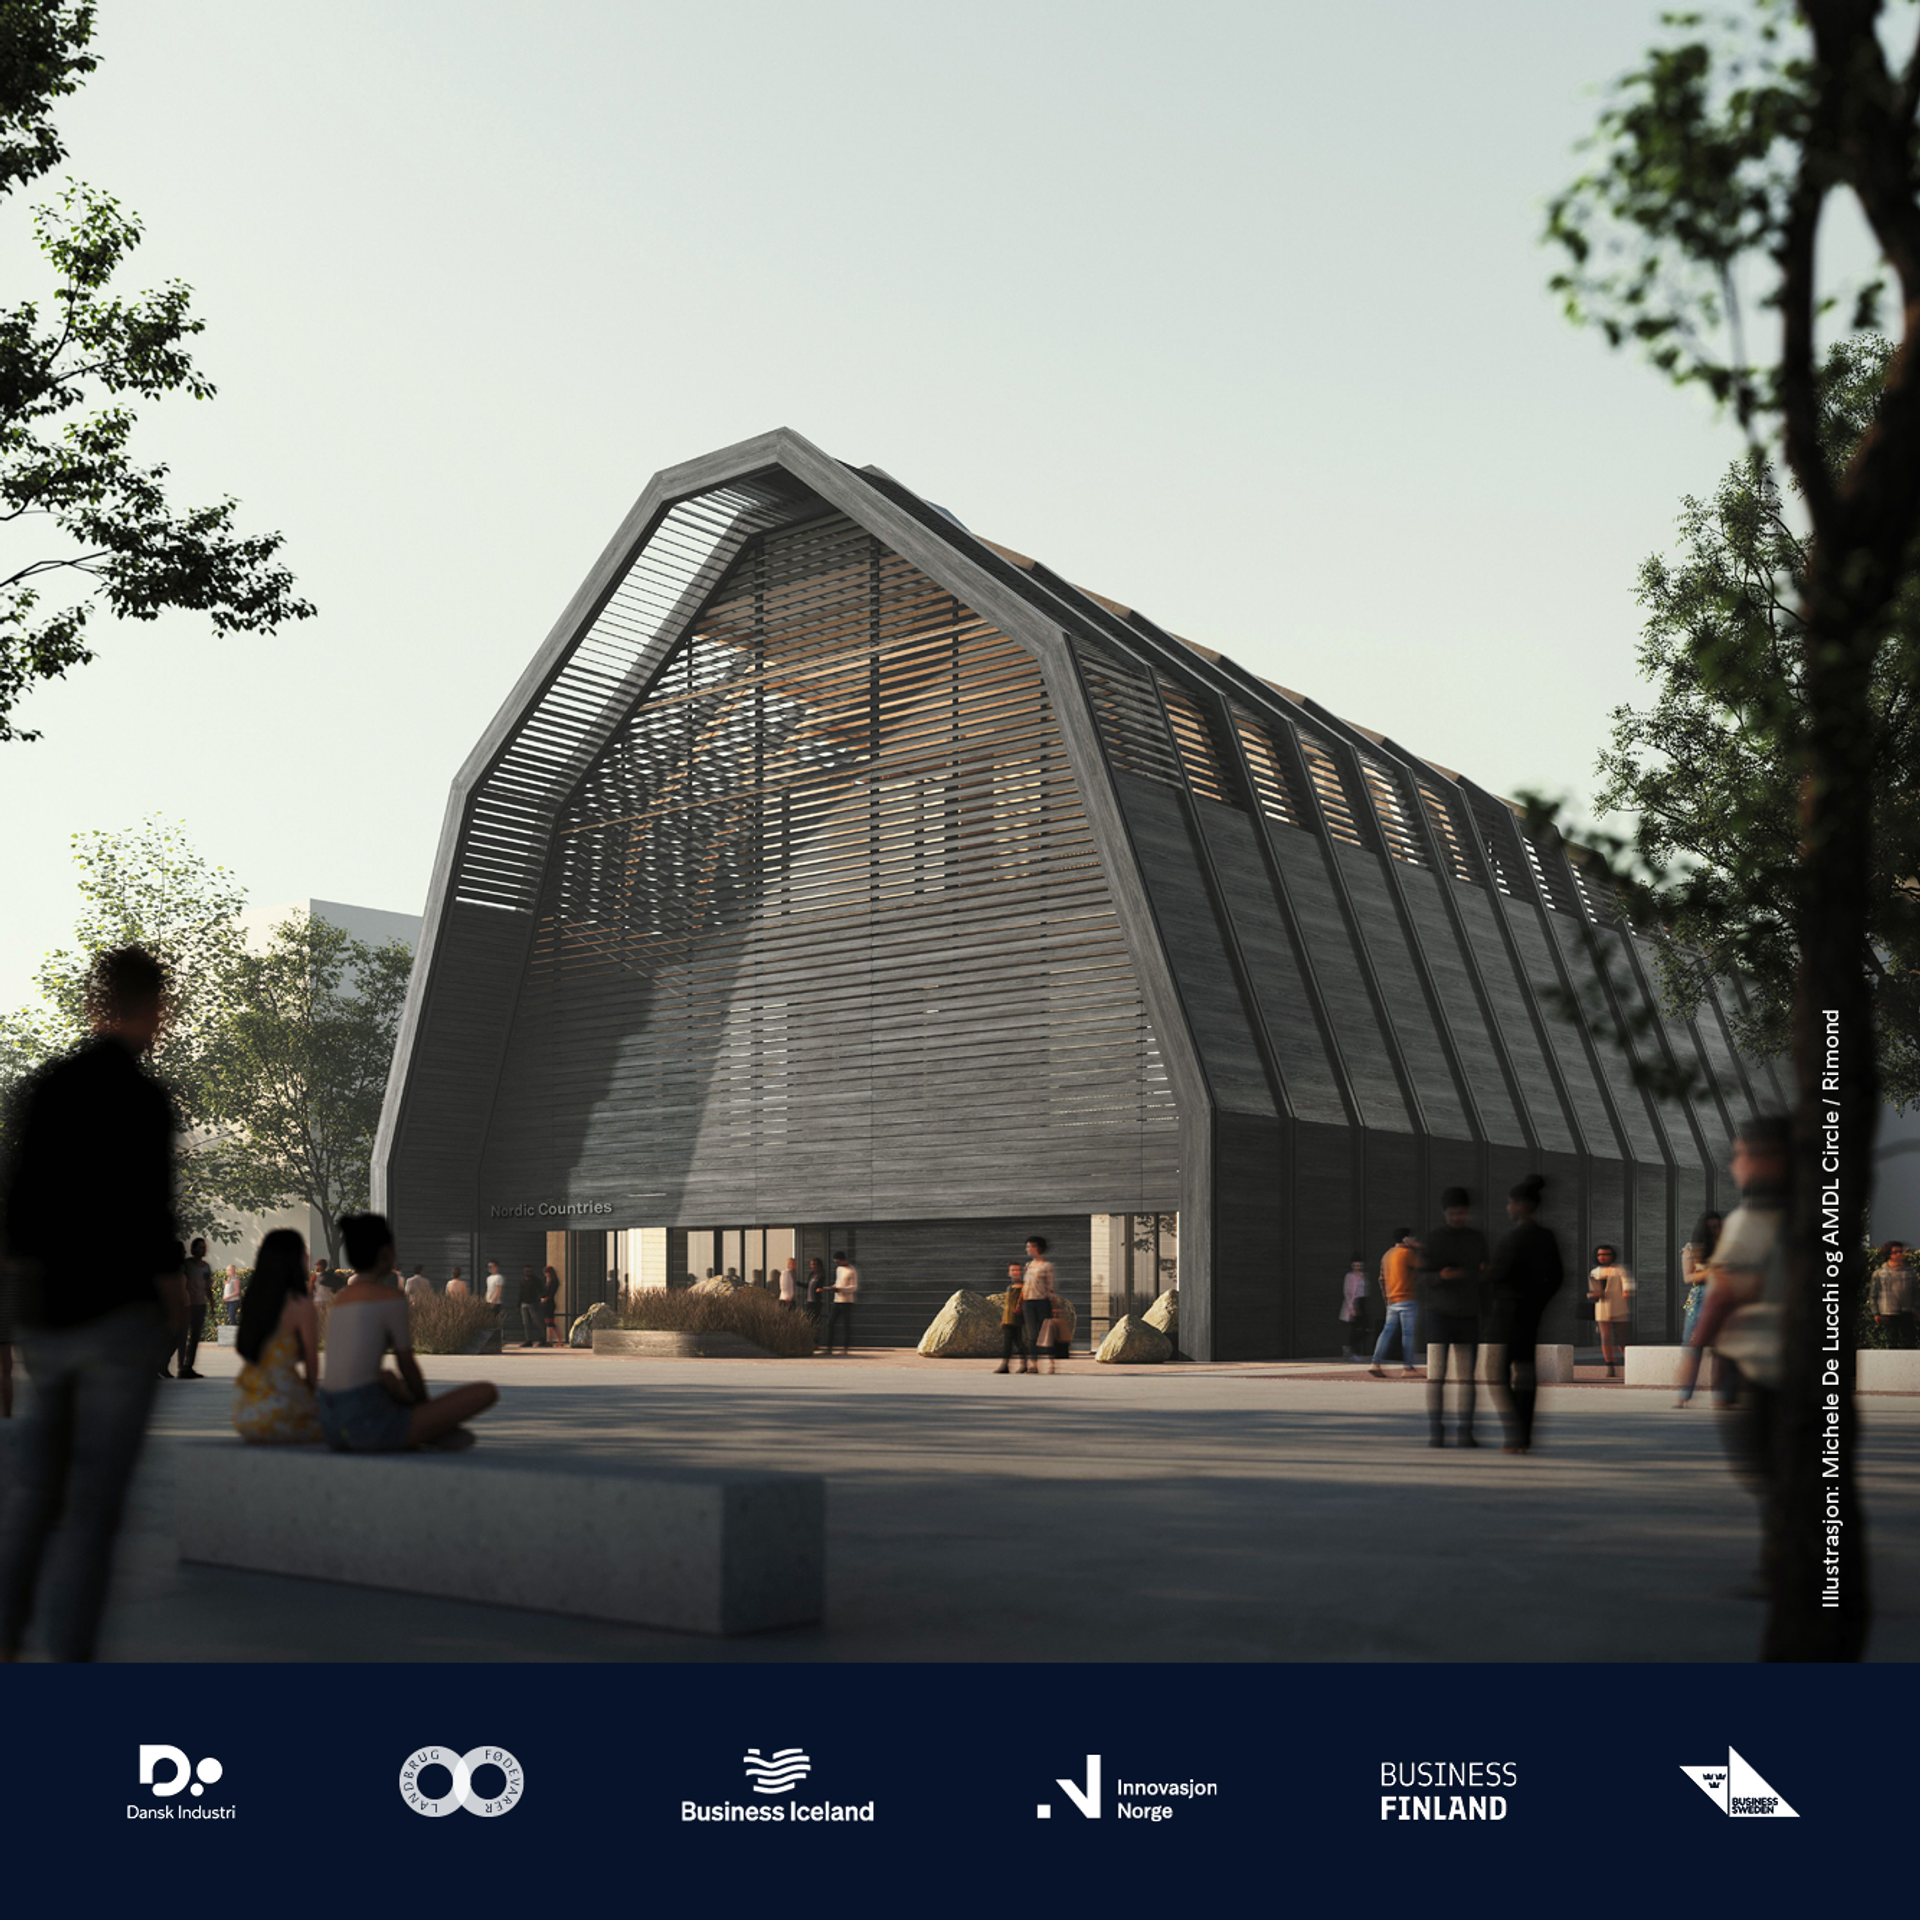 Osaka EXPO 2025 pavilion with Nordic partner logos